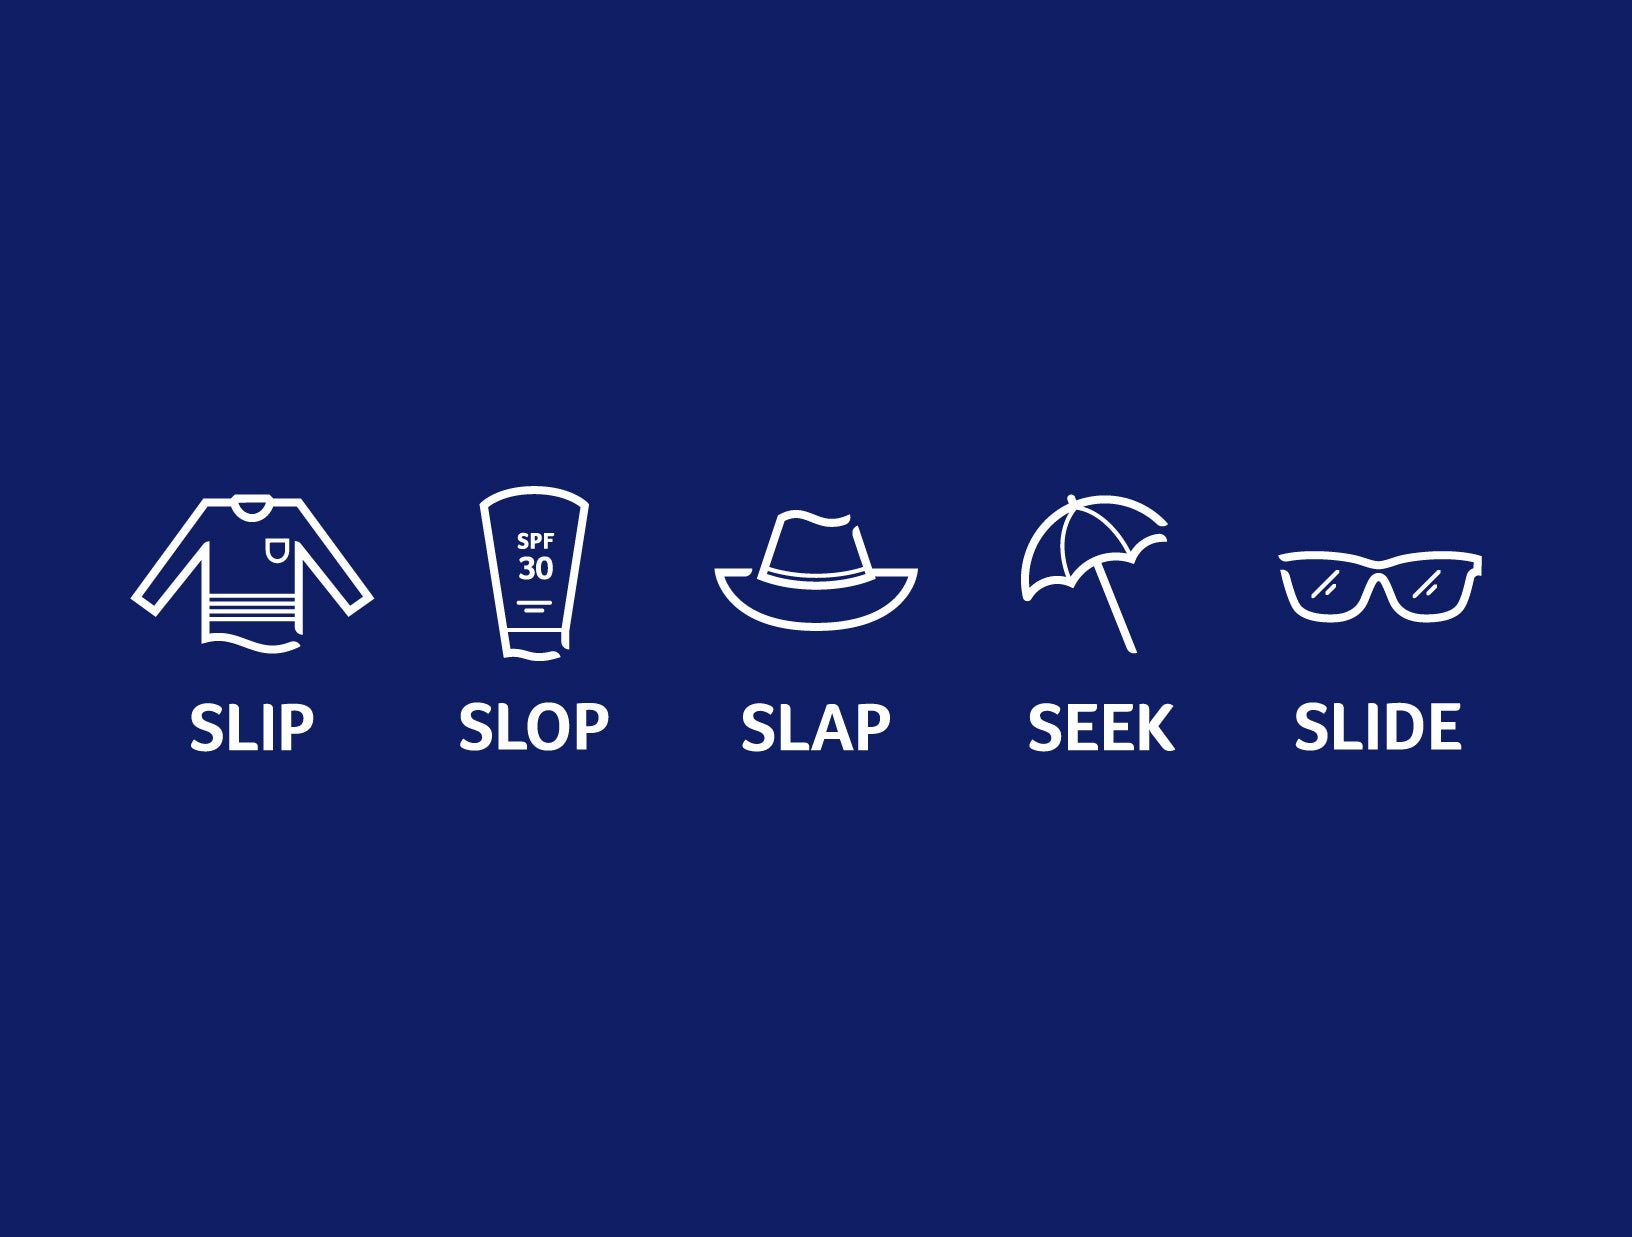 5 S's of Sun Safety - Slip, Slop, Slap, Seek & Slide, Cancer Council